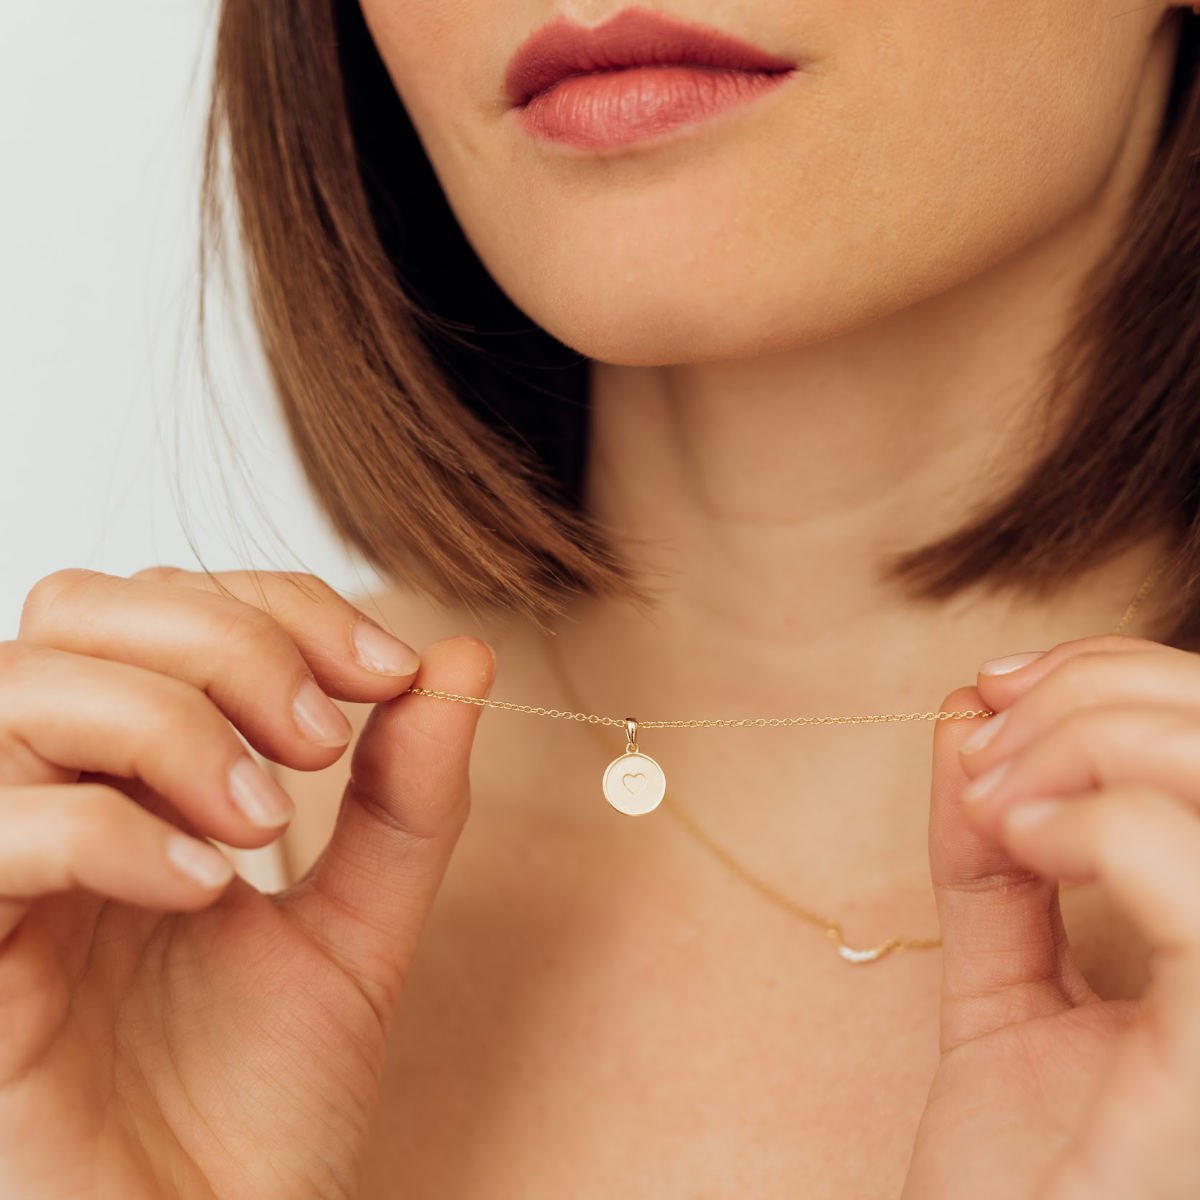 Heart - Necklace | Kette für €39.99 von So Loved Manufacture